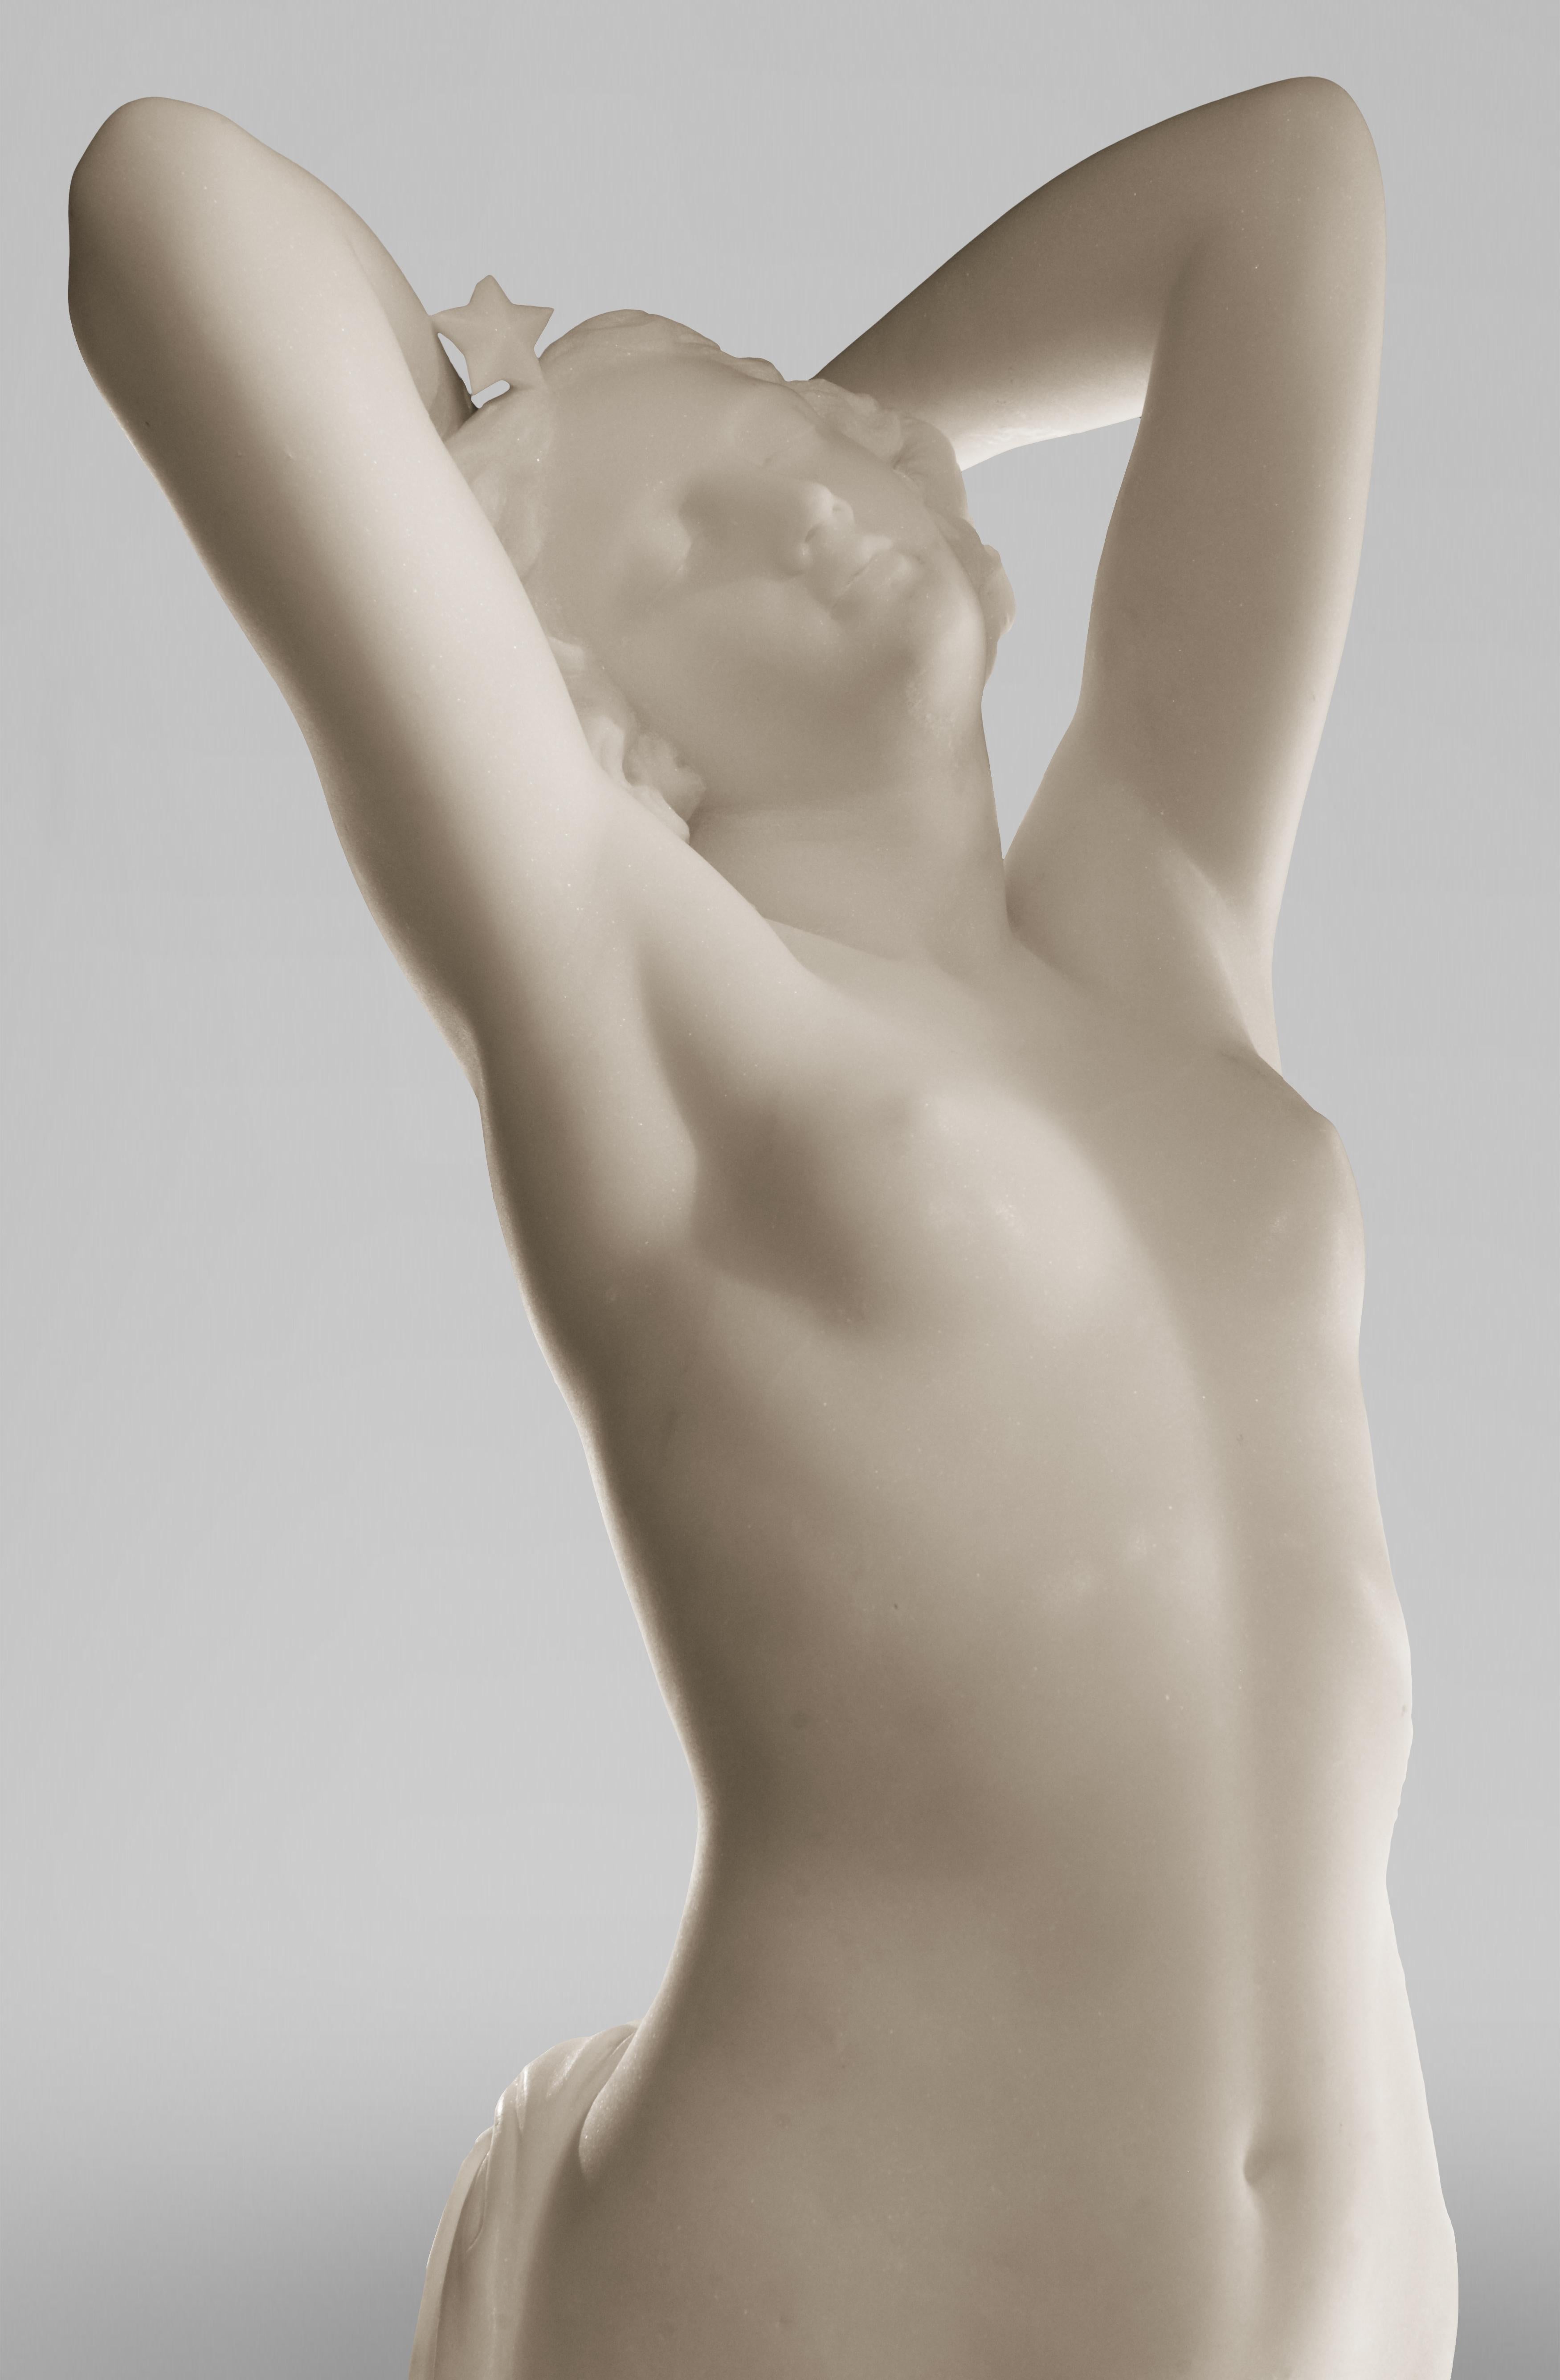 Cette étonnante sculpture en marbre de Carrare a été réalisée vers 1850 par le sculpteur français Joseph Michele Pollet, d'après l'un de ses modèles en plâtre présenté au Salon de Paris en 1848. Il s'agit d'une statue en ronde-bosse intitulée Une